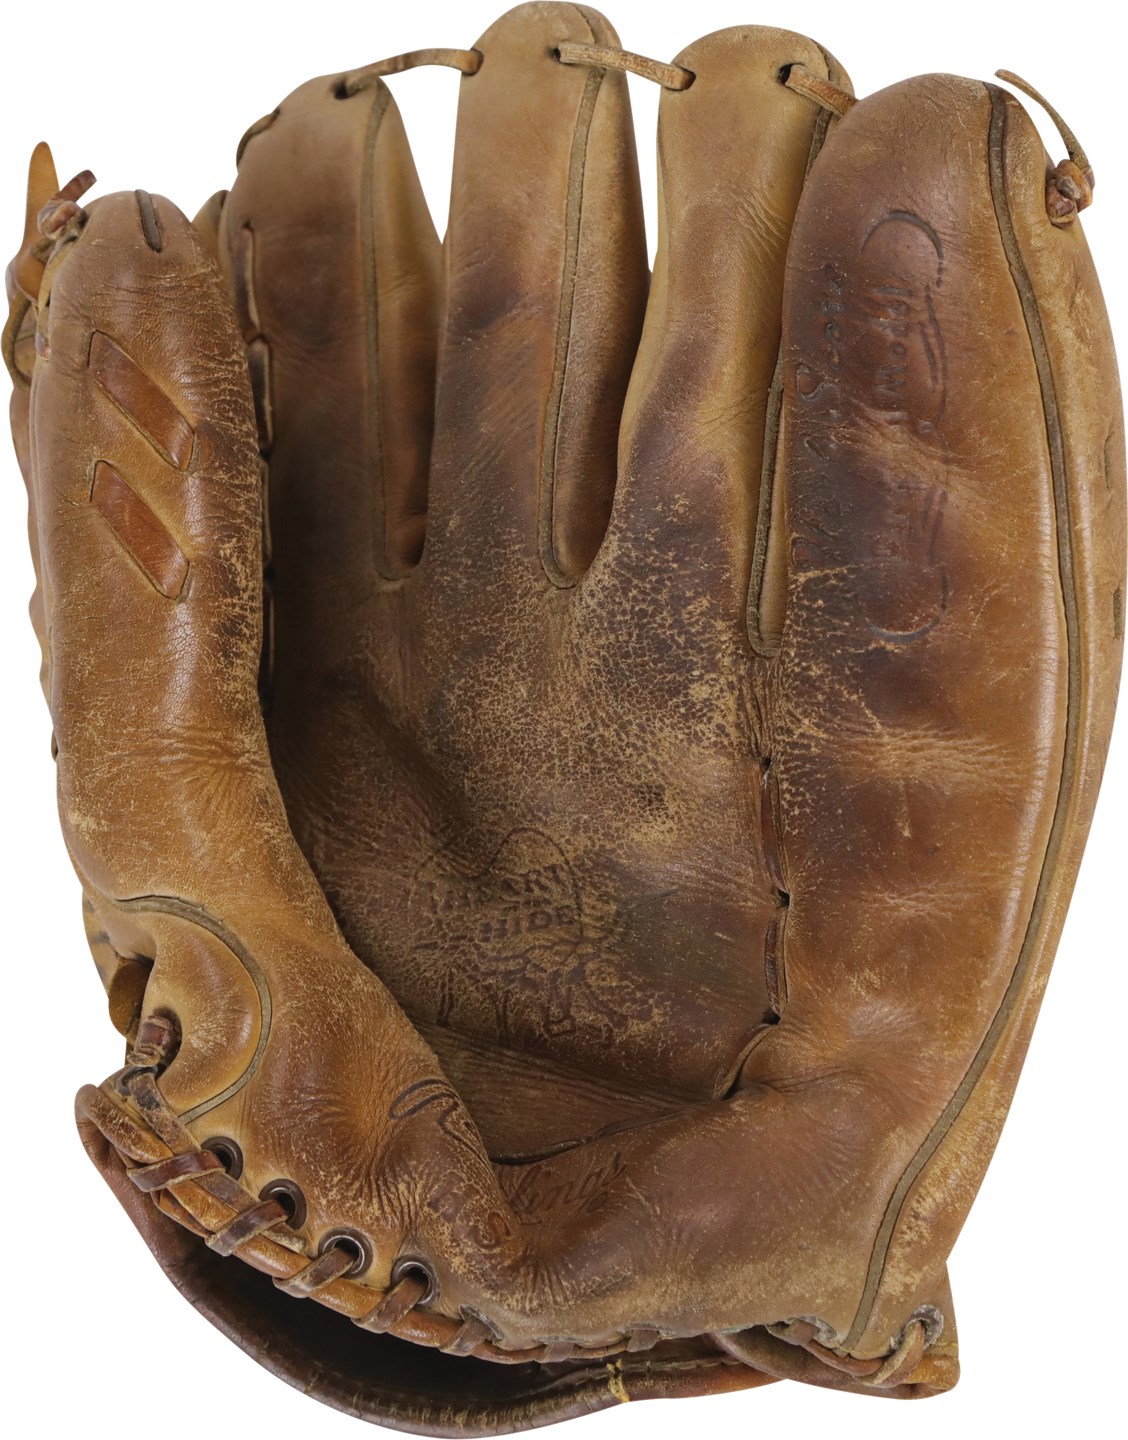 Baseball Equipment - 1950s Bob Lemon Cleveland Indians Signed Game Used Glove (PSA)